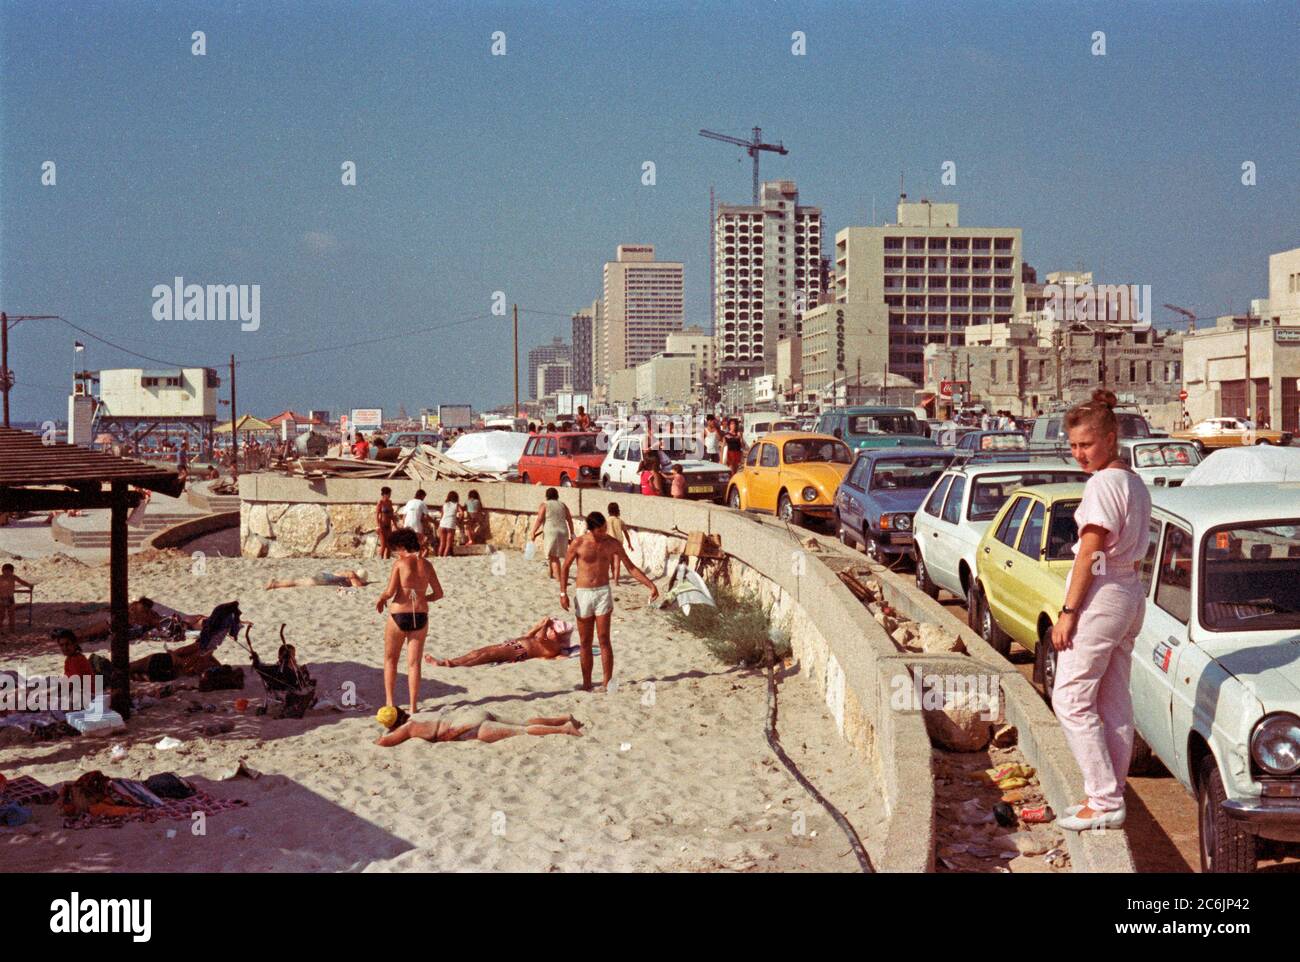 Bord de mer, août 1983, tel Aviv, Israël Banque D'Images